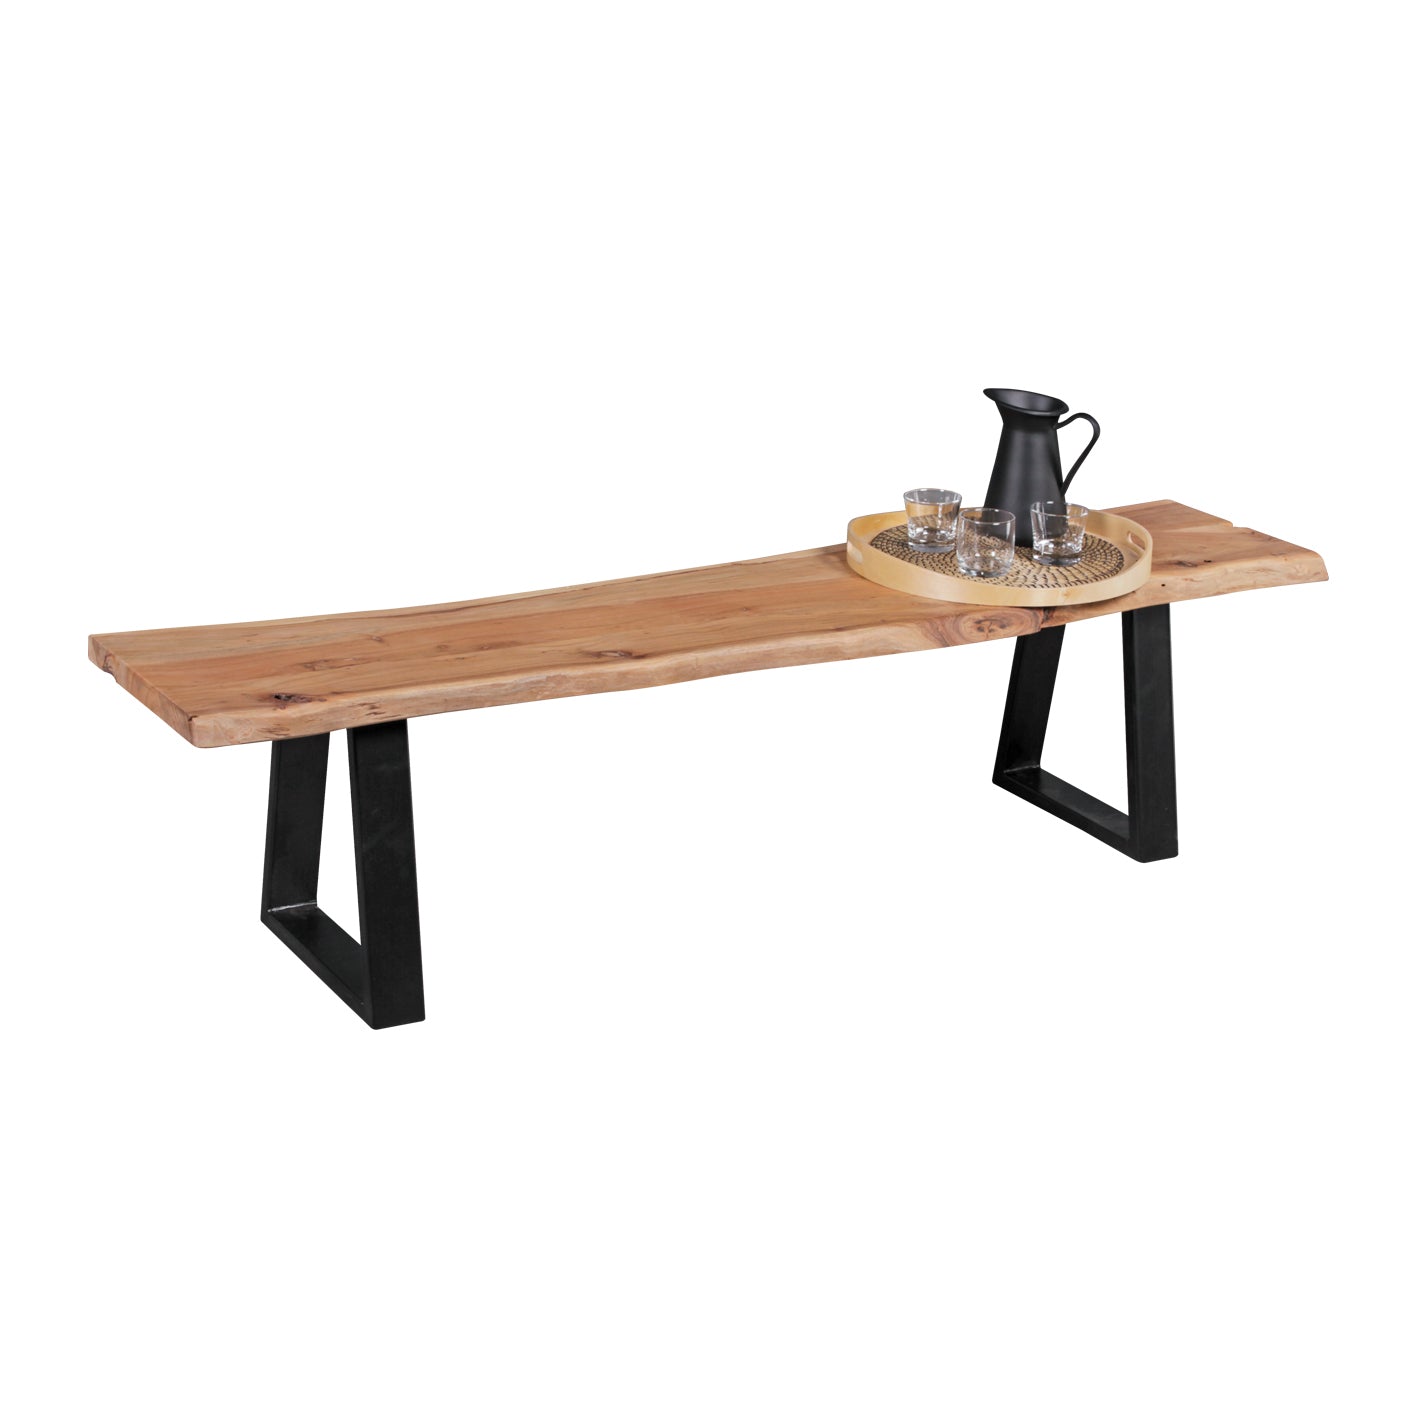 Køkkenbænk / træbænk / spisebordsbænk i træstamme look, massivt træ, 160 cm